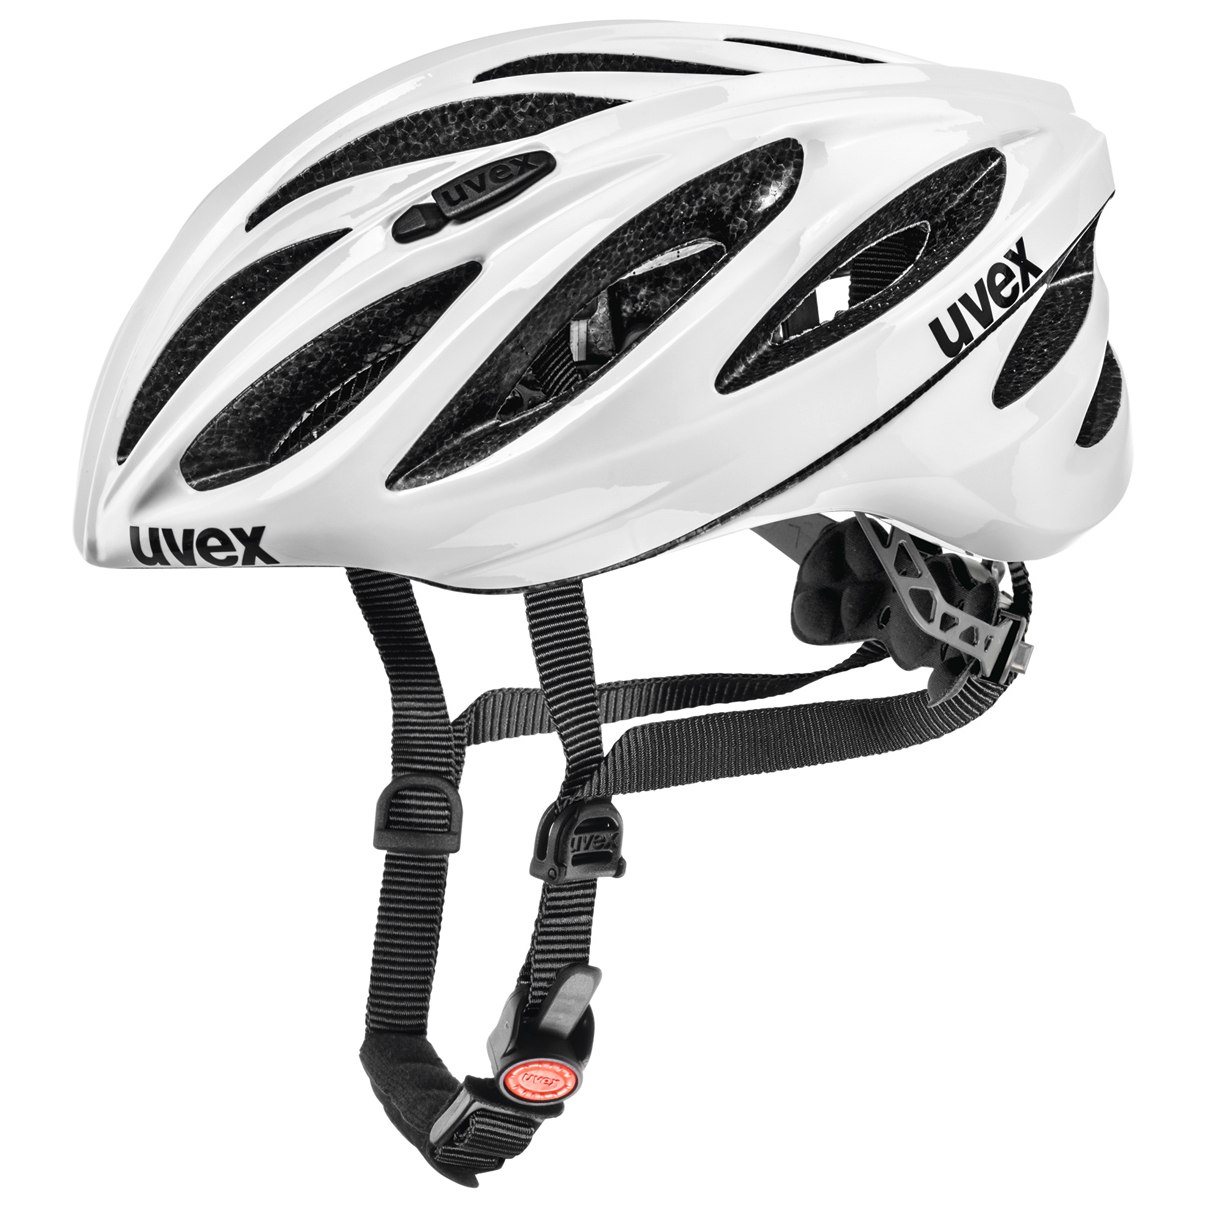 Produktbild von Uvex boss race Helm - weiß